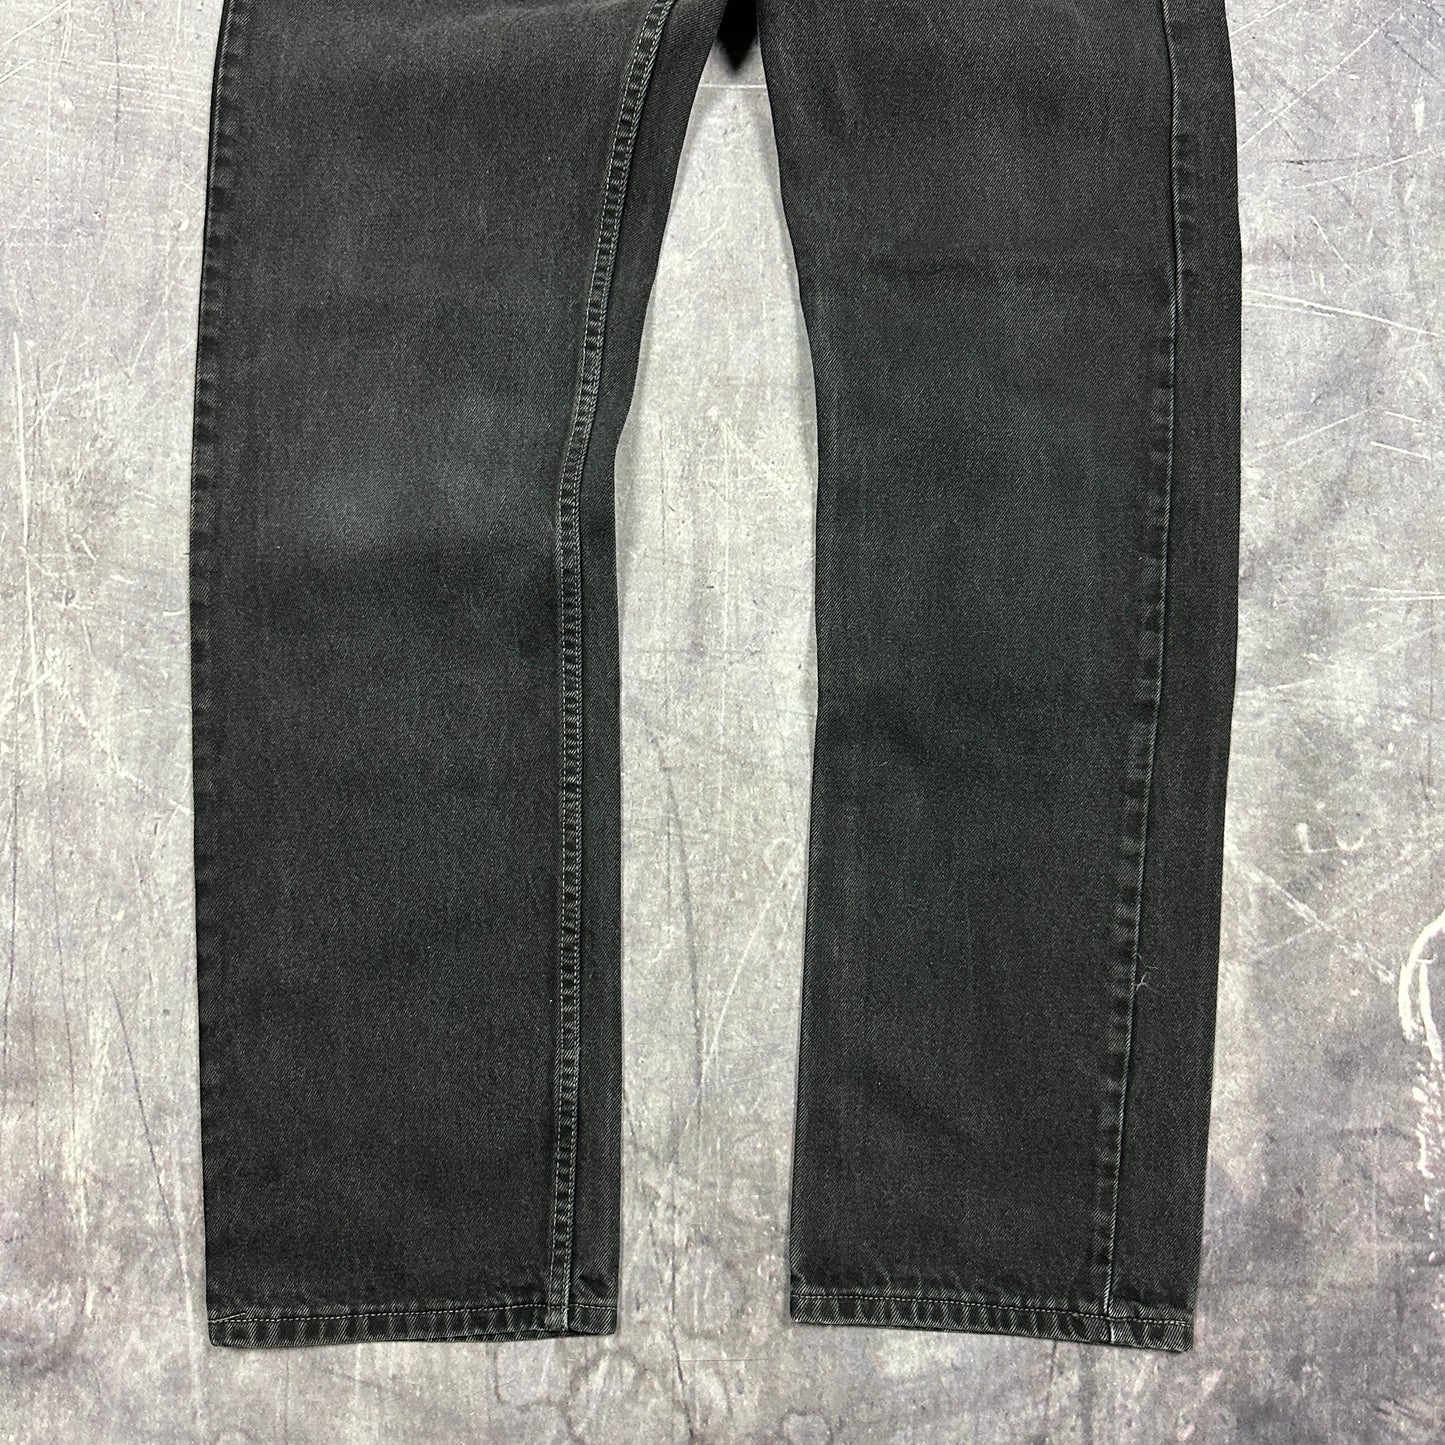 90s Black Levis 505 Jeans 32x33 C99